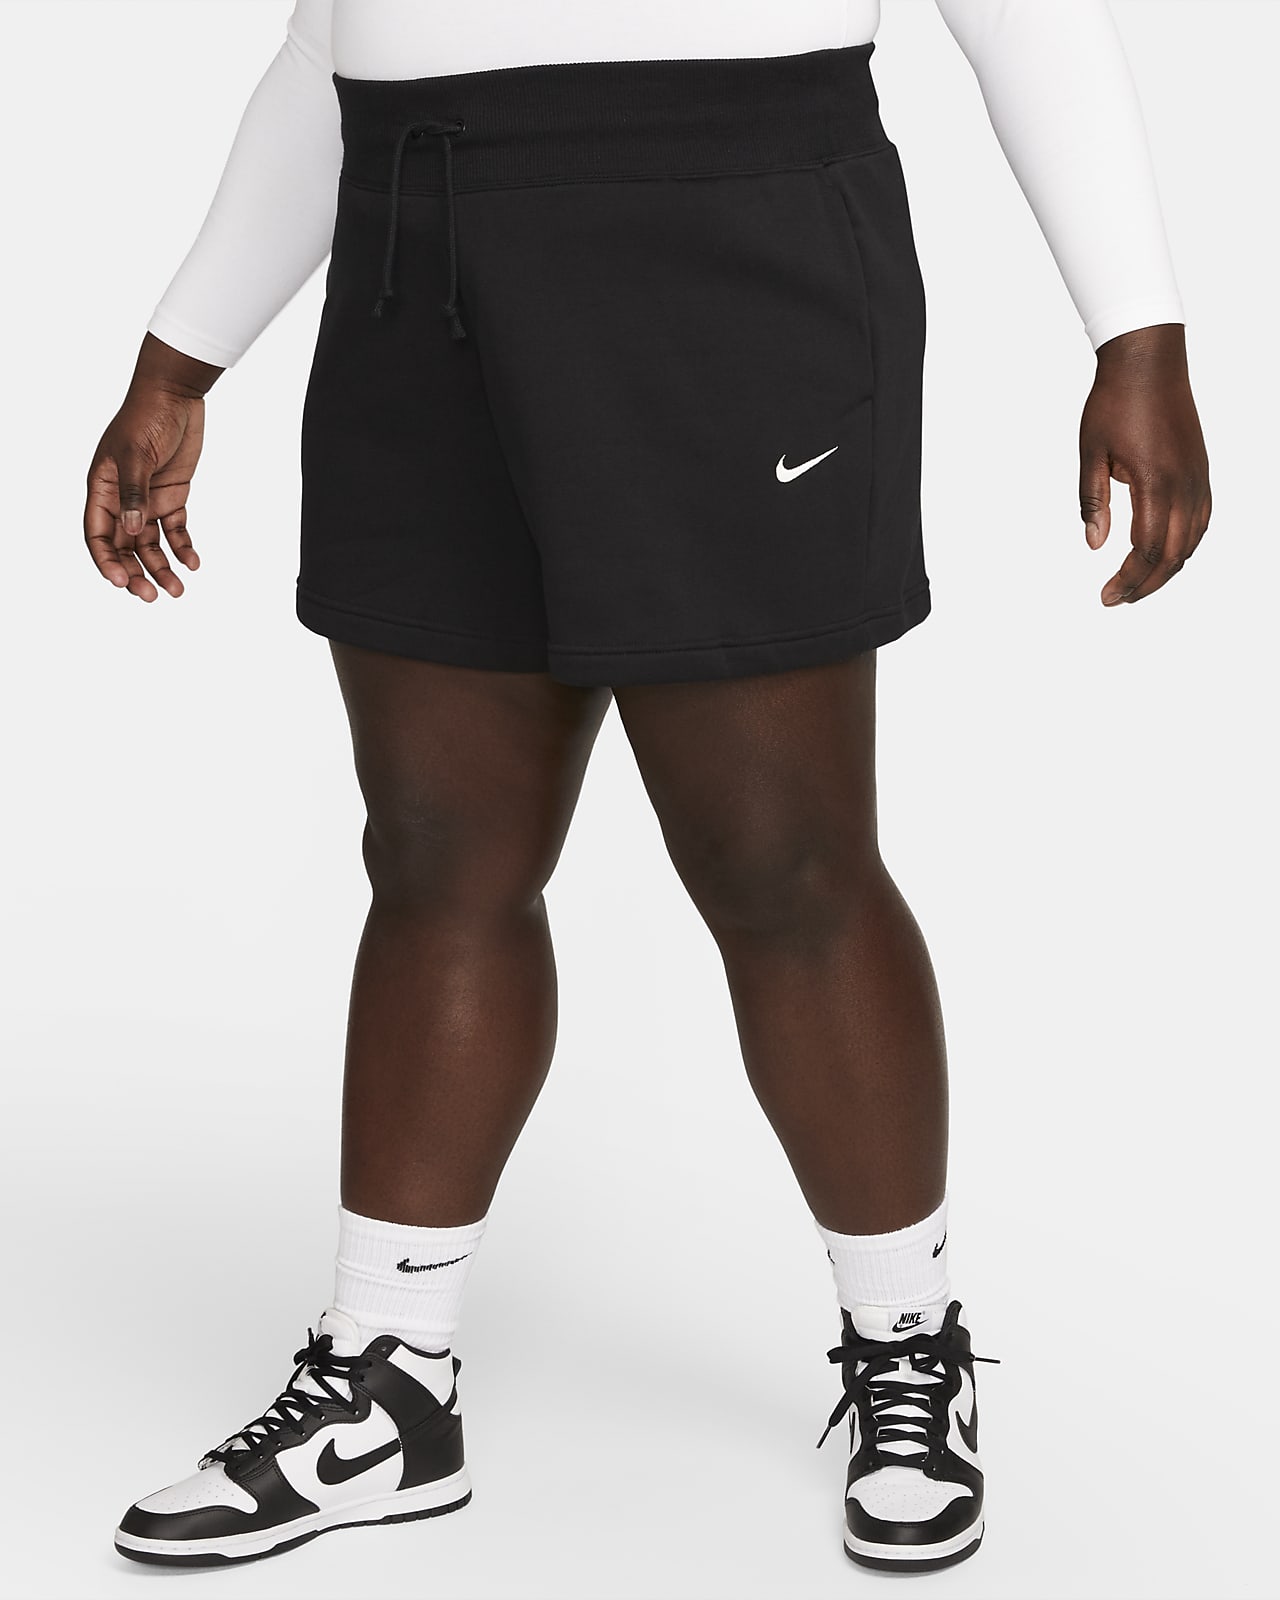 Nike Sportswear Phoenix Fleece magas derekú, laza női rövidnadrág (plus size méret)